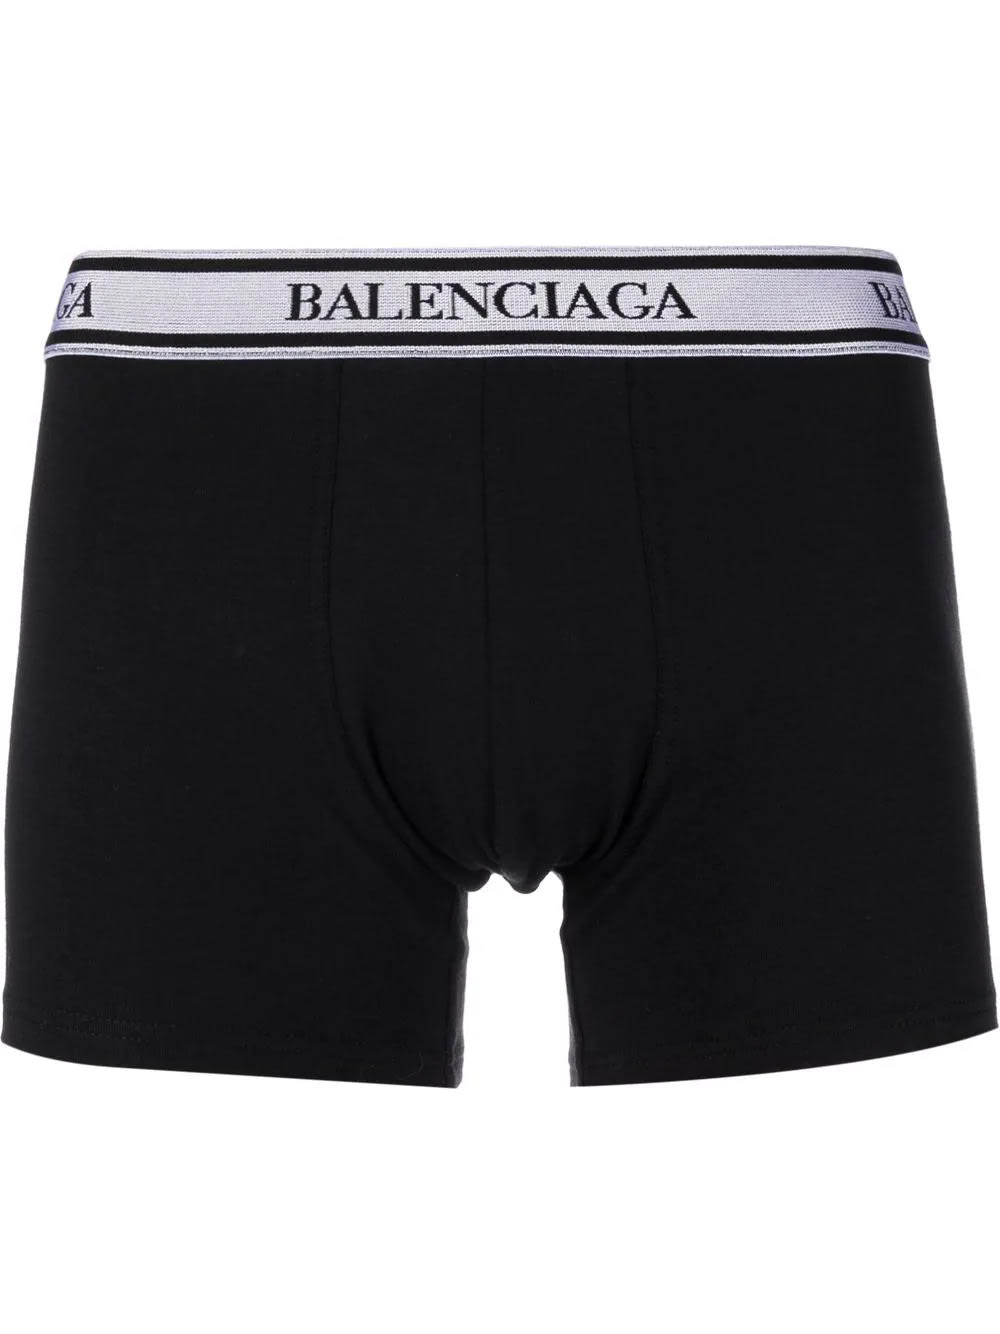 Balenciaga Man Black Boxer With White Logo Band